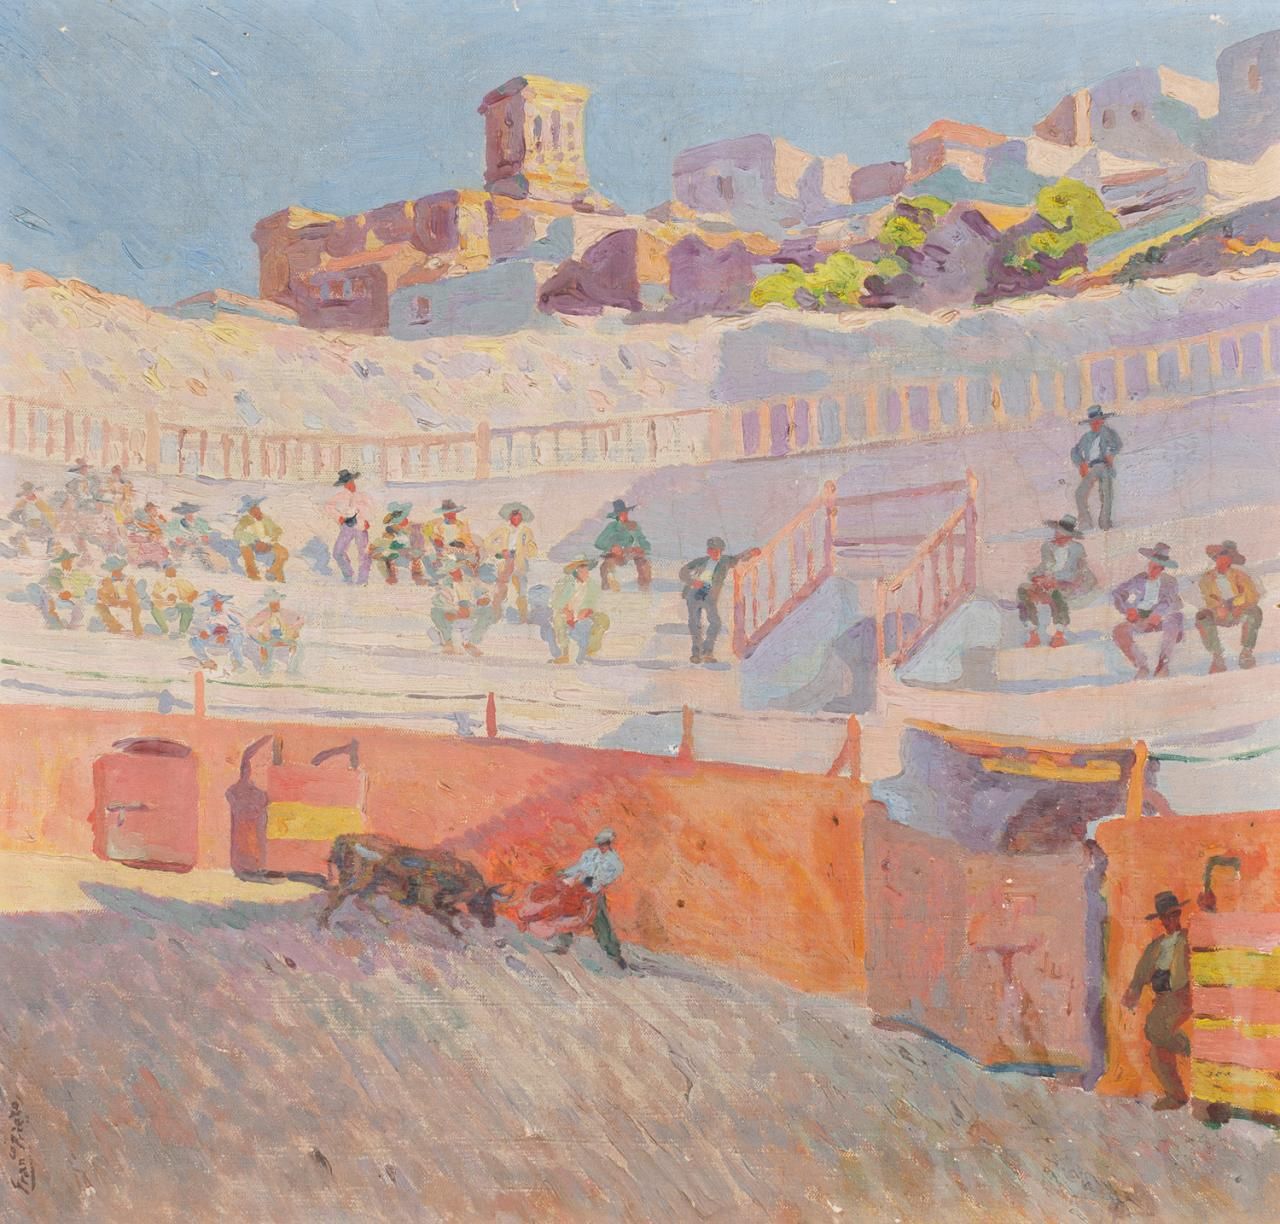 FRANCISCO PRIETO (Valladolid, 1884 - 1967) Bullring
Huile sur toile
84 x 90 cm
S&hellip;